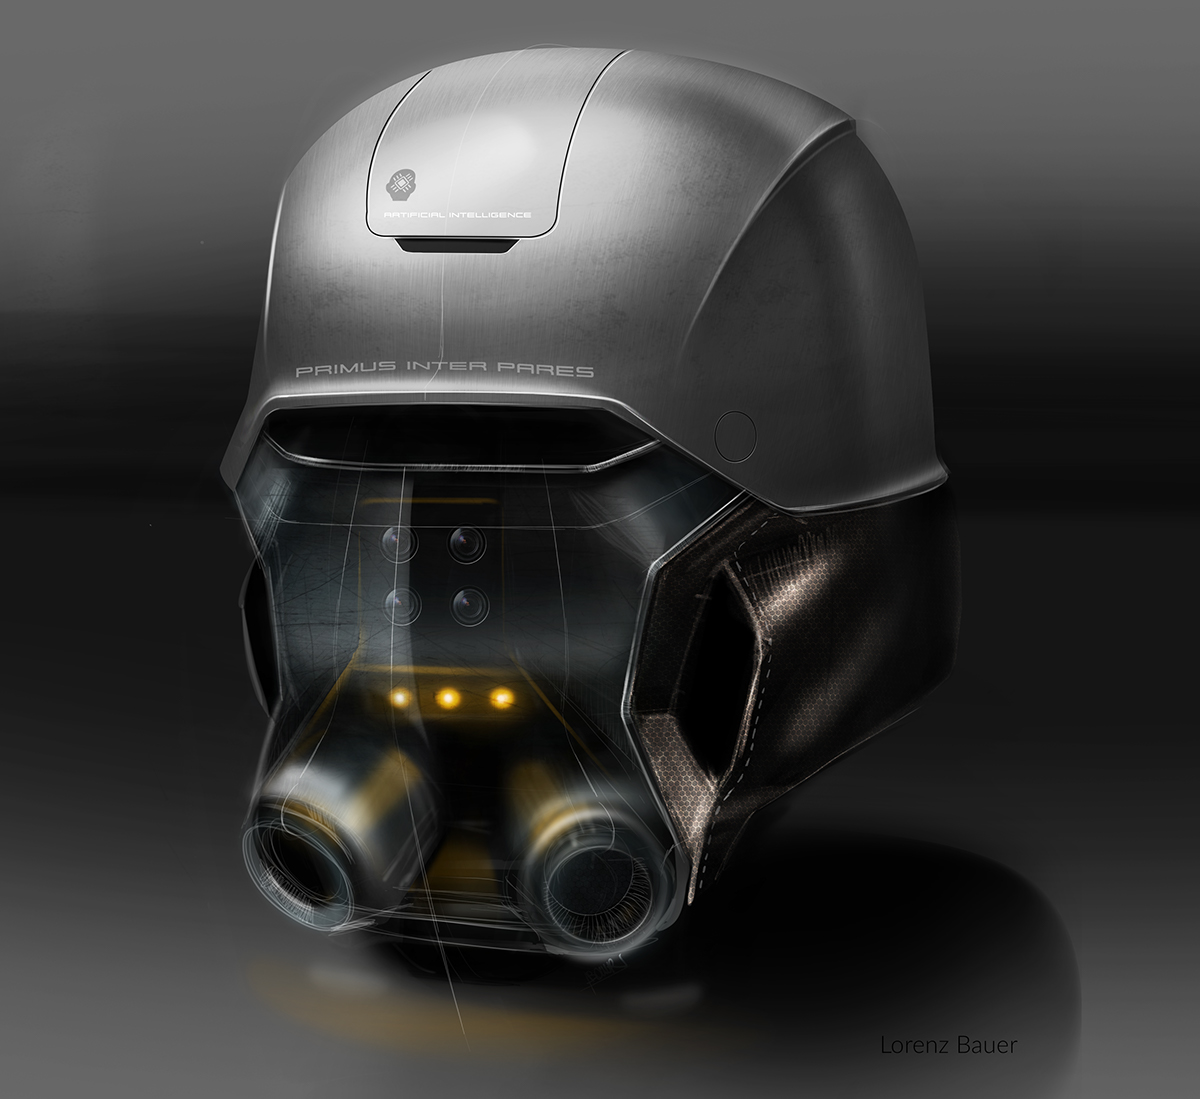 helmetchallenge #helmetchallenge Lorenz Bauer sketch Helmet sci-fi concept design robot future helmet challenge